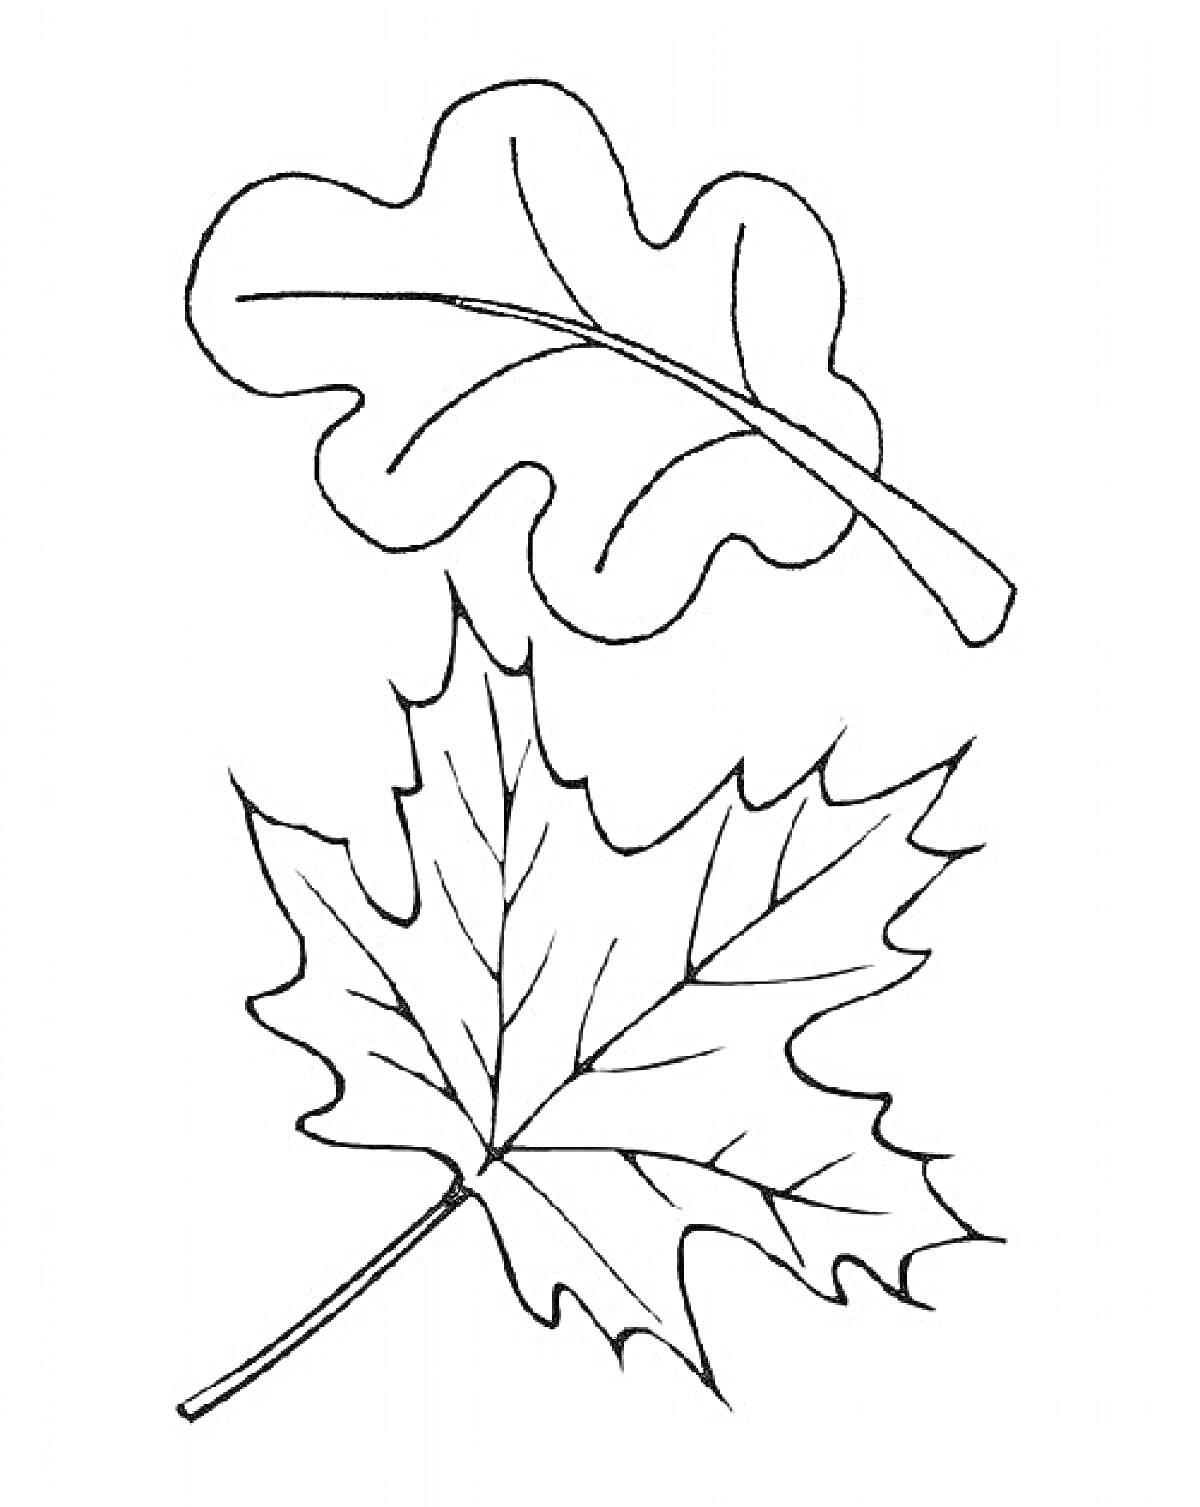 Два листа: кленовый лист и дубовый лист